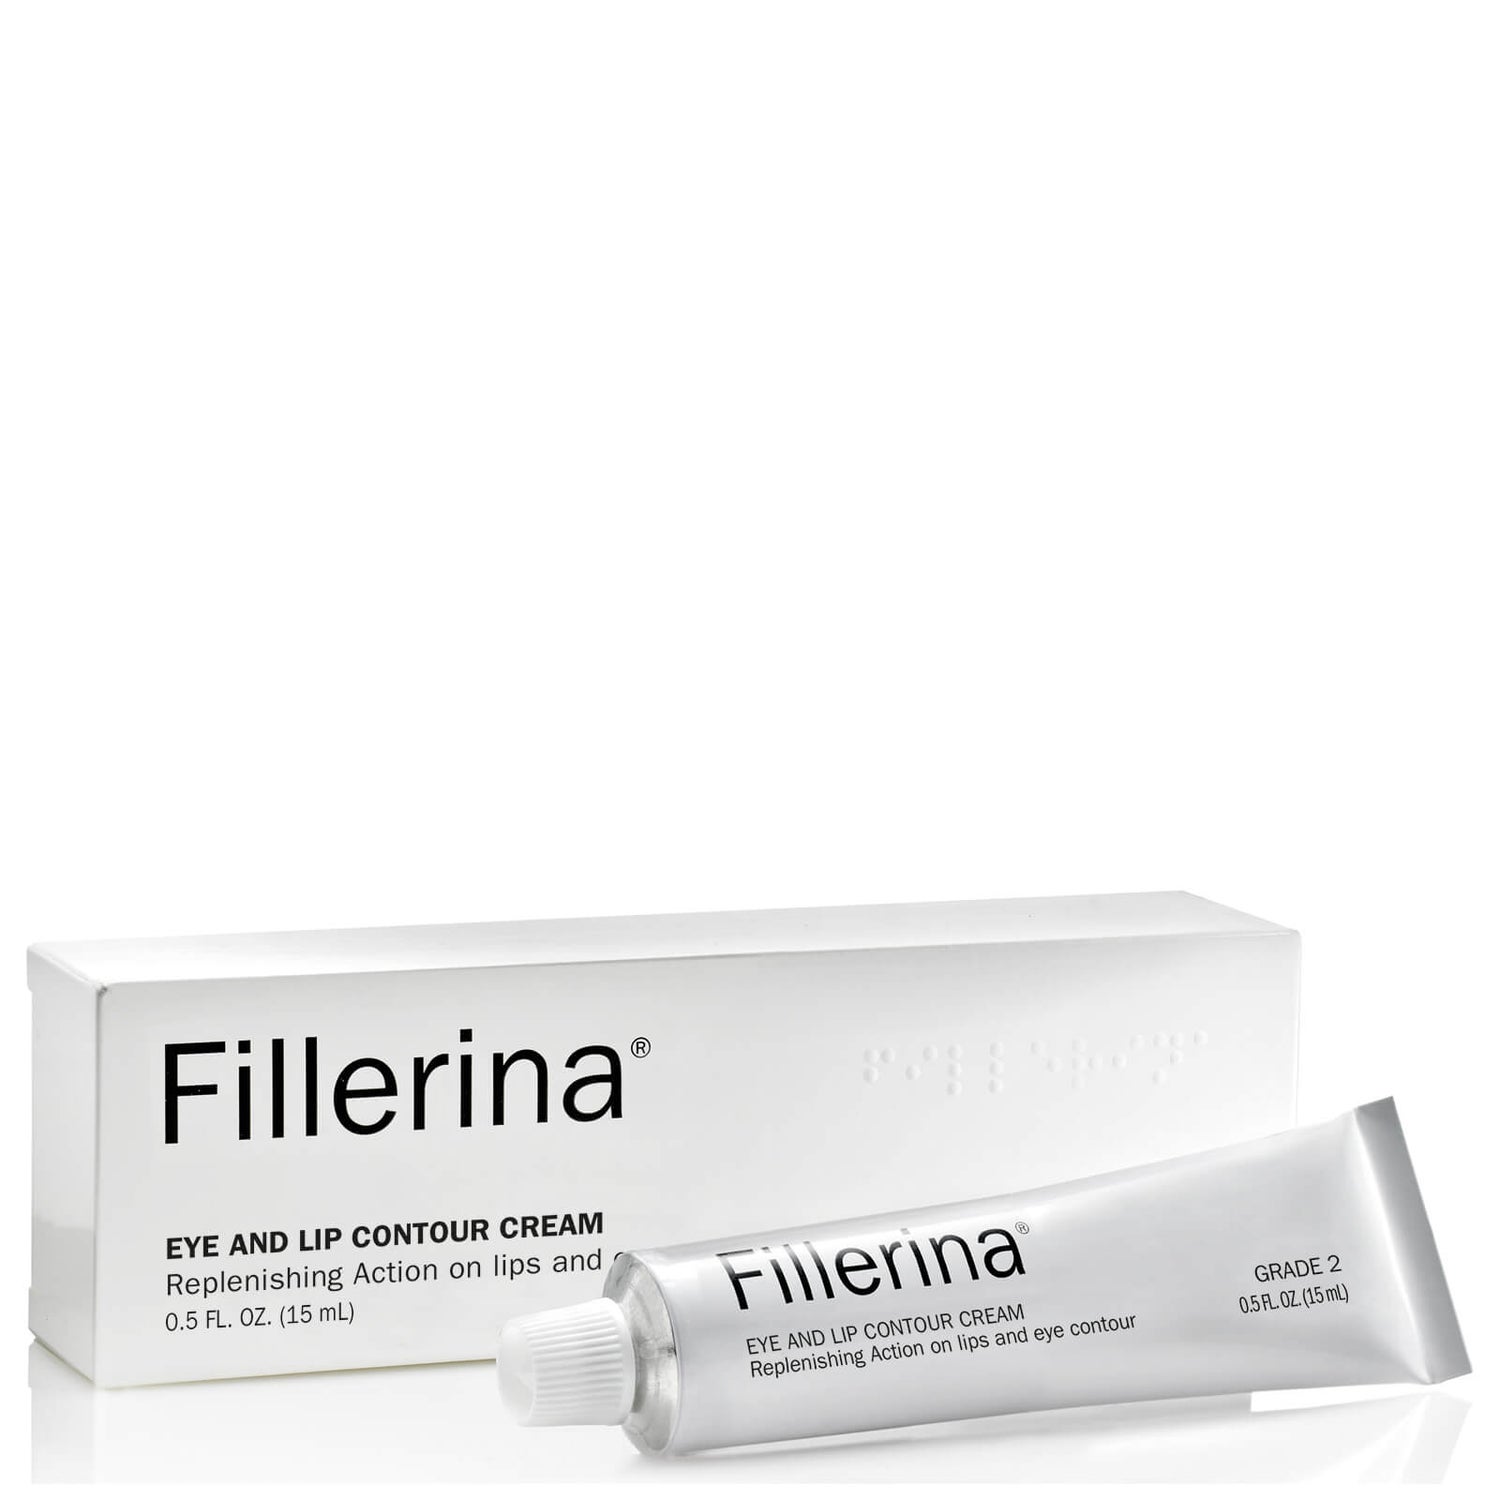 Fillerina Eye and Lip Contour Cream - Grade 2 15ml